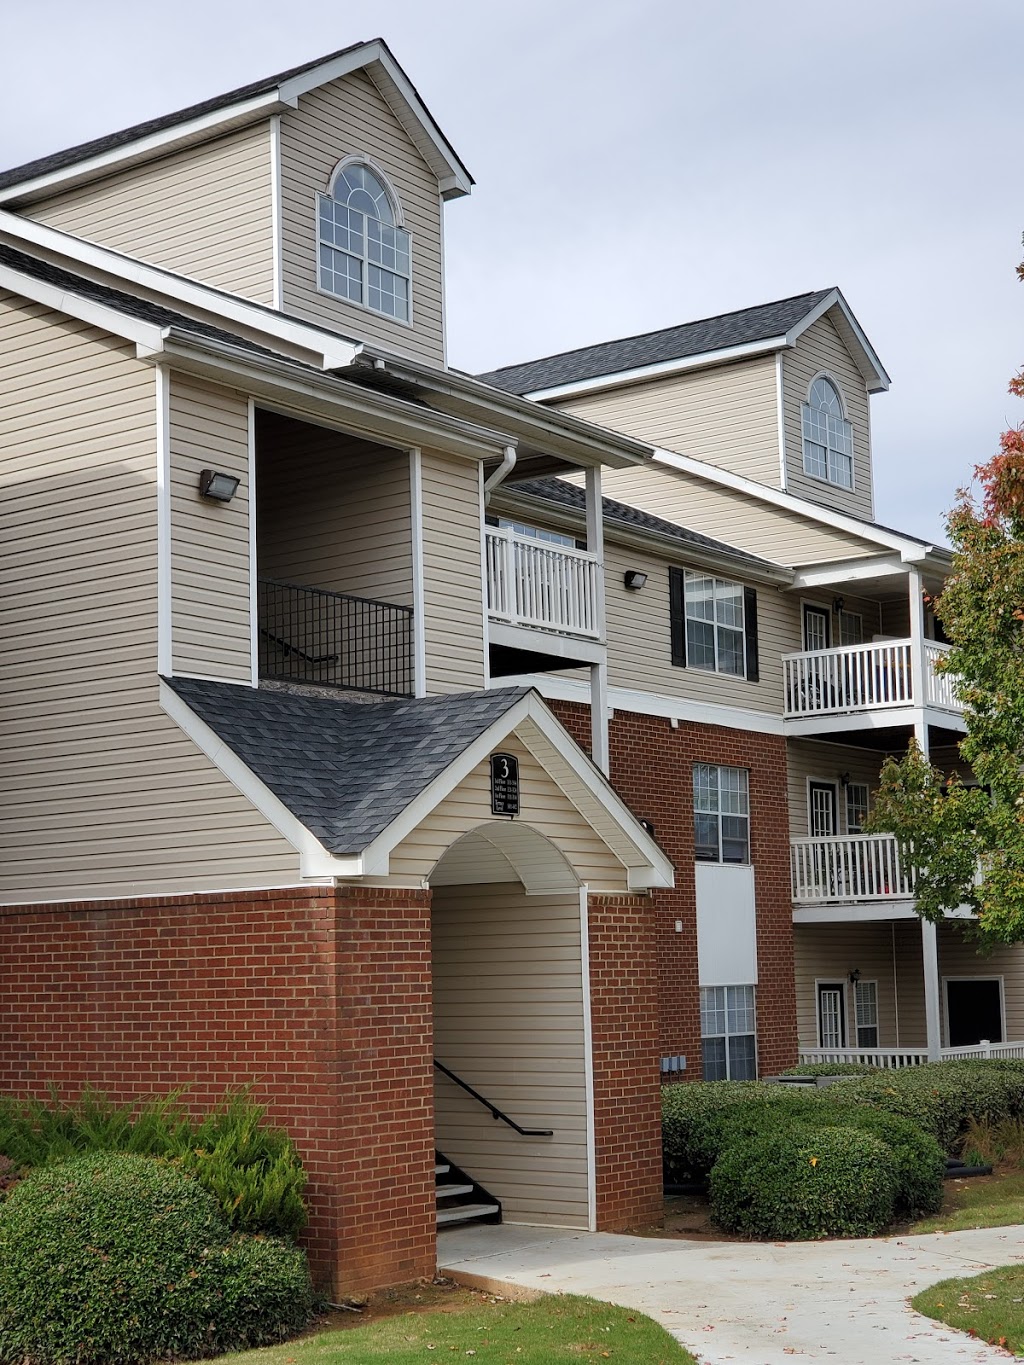 Walden Landing Apartment Homes | 11015 Tara Blvd, Hampton, GA 30228, USA | Phone: (770) 471-4411